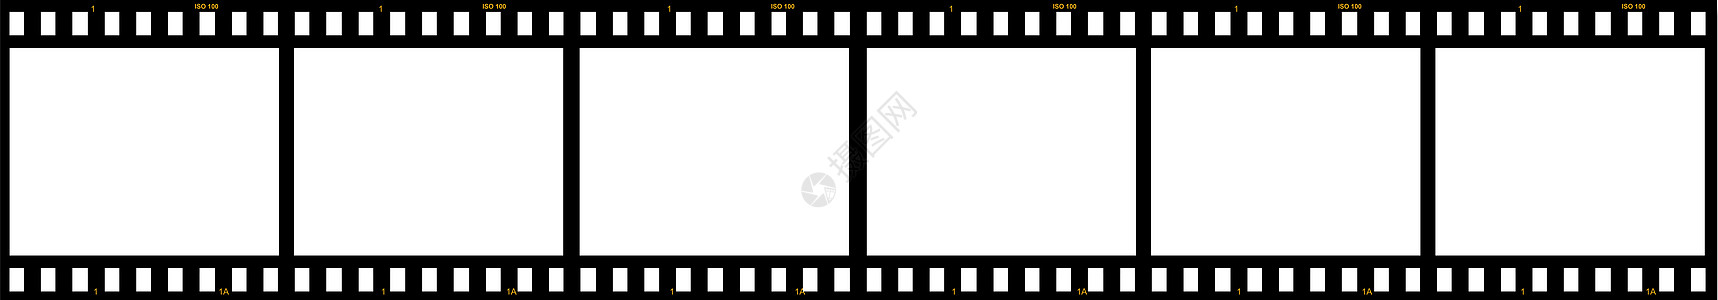 6个空白胶片框框架电影业计算机绘图白色摄影卷轴电影相机图片